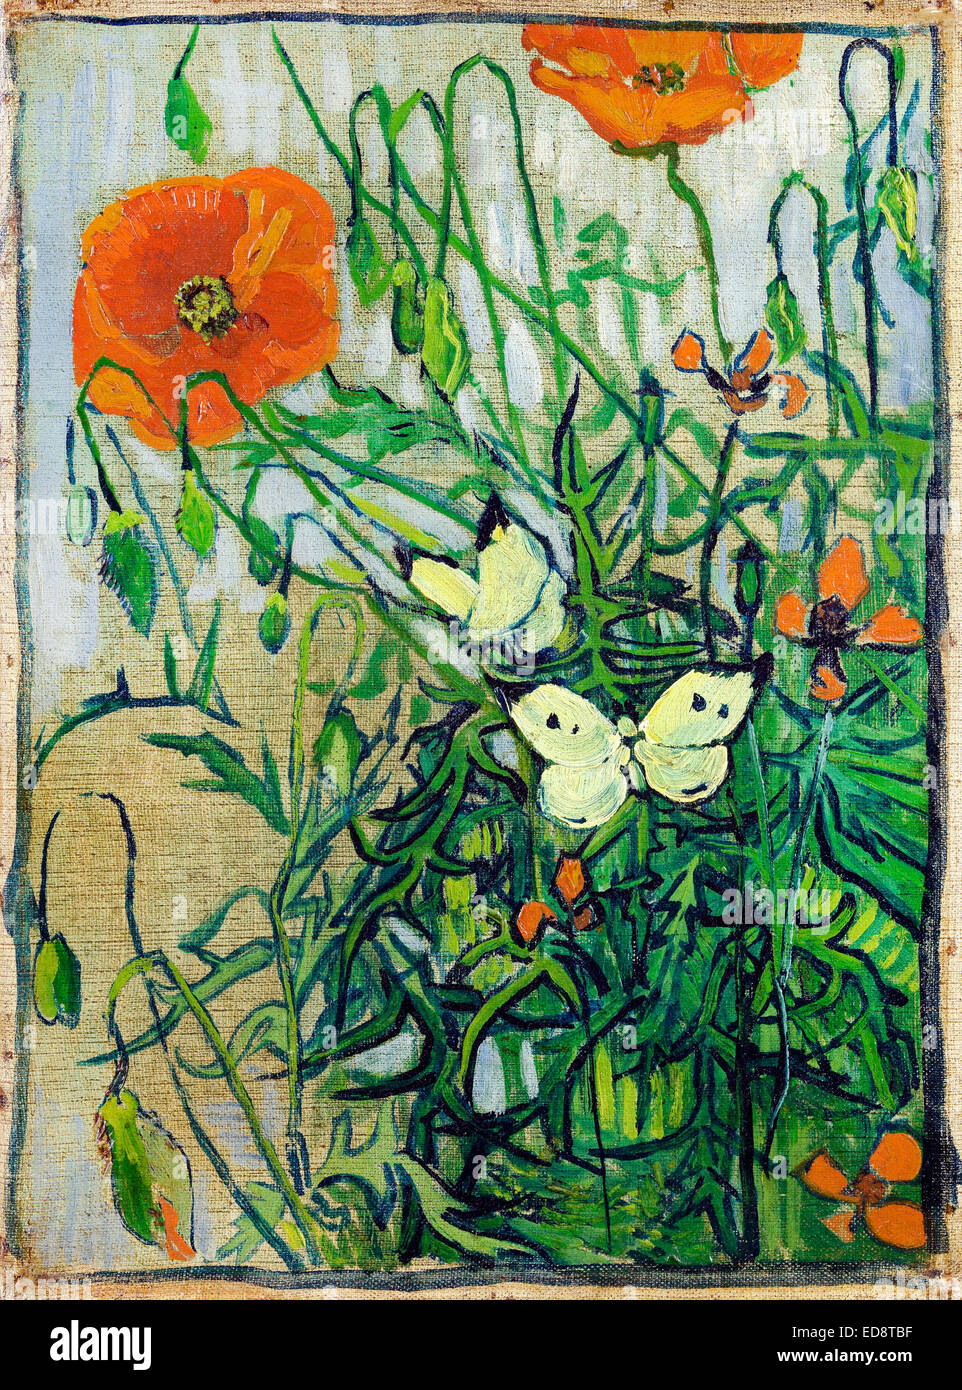 Vincent Van Gogh, Mohn und Schmetterlinge. 1890. Post-Impressionismus. Öl auf Leinwand. Van Gogh Museum, Amsterdam, Niederlande. Stockfoto